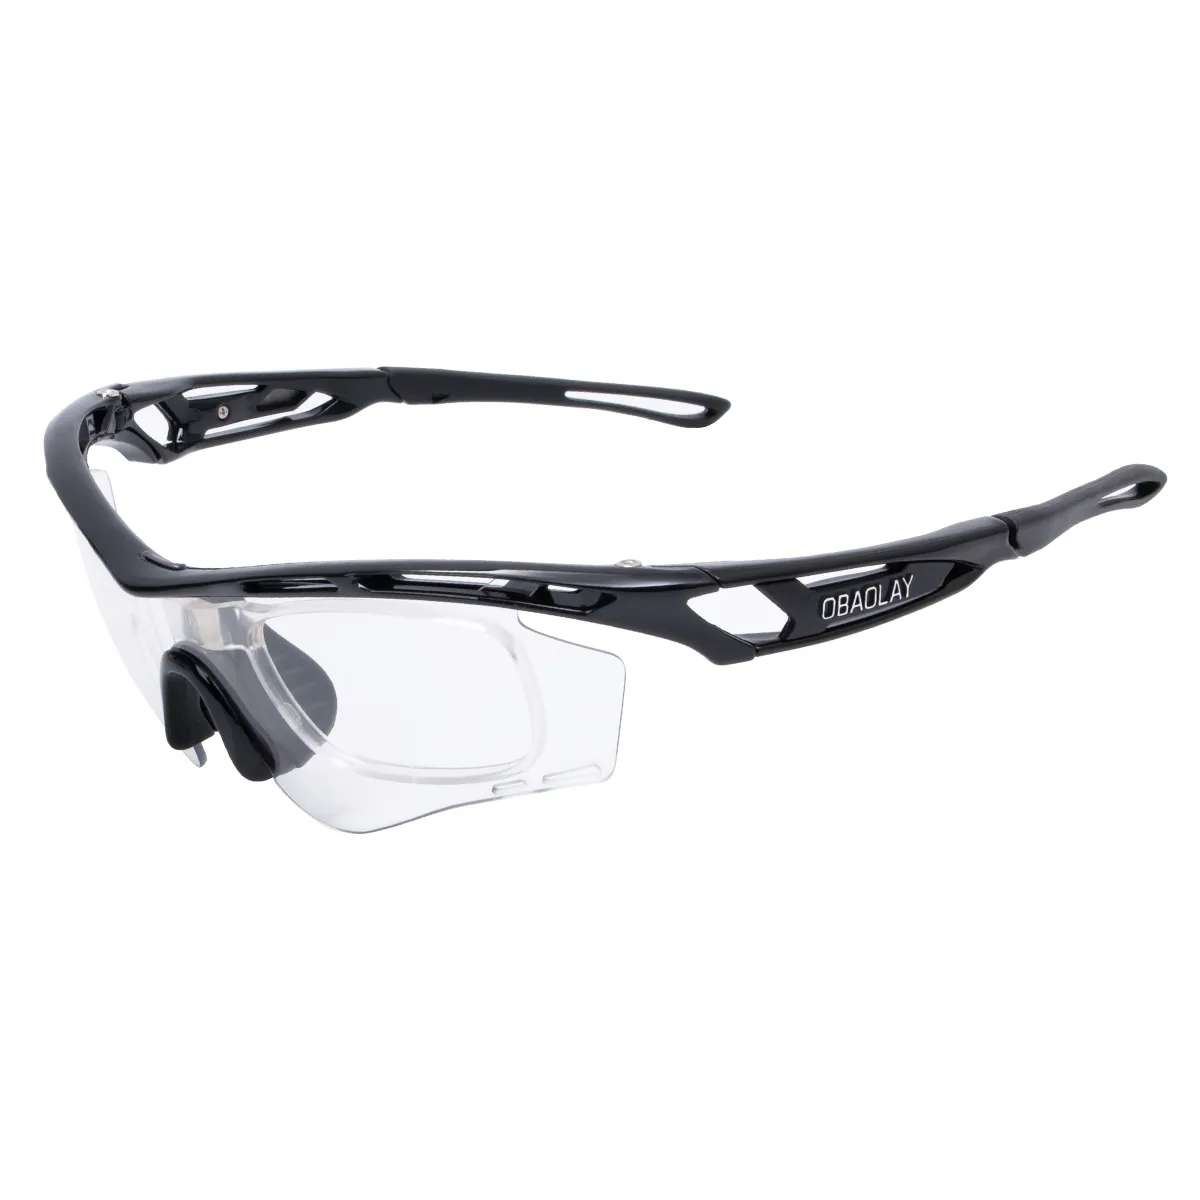 Ted - Half-Rim Black Glasses for Men & Women